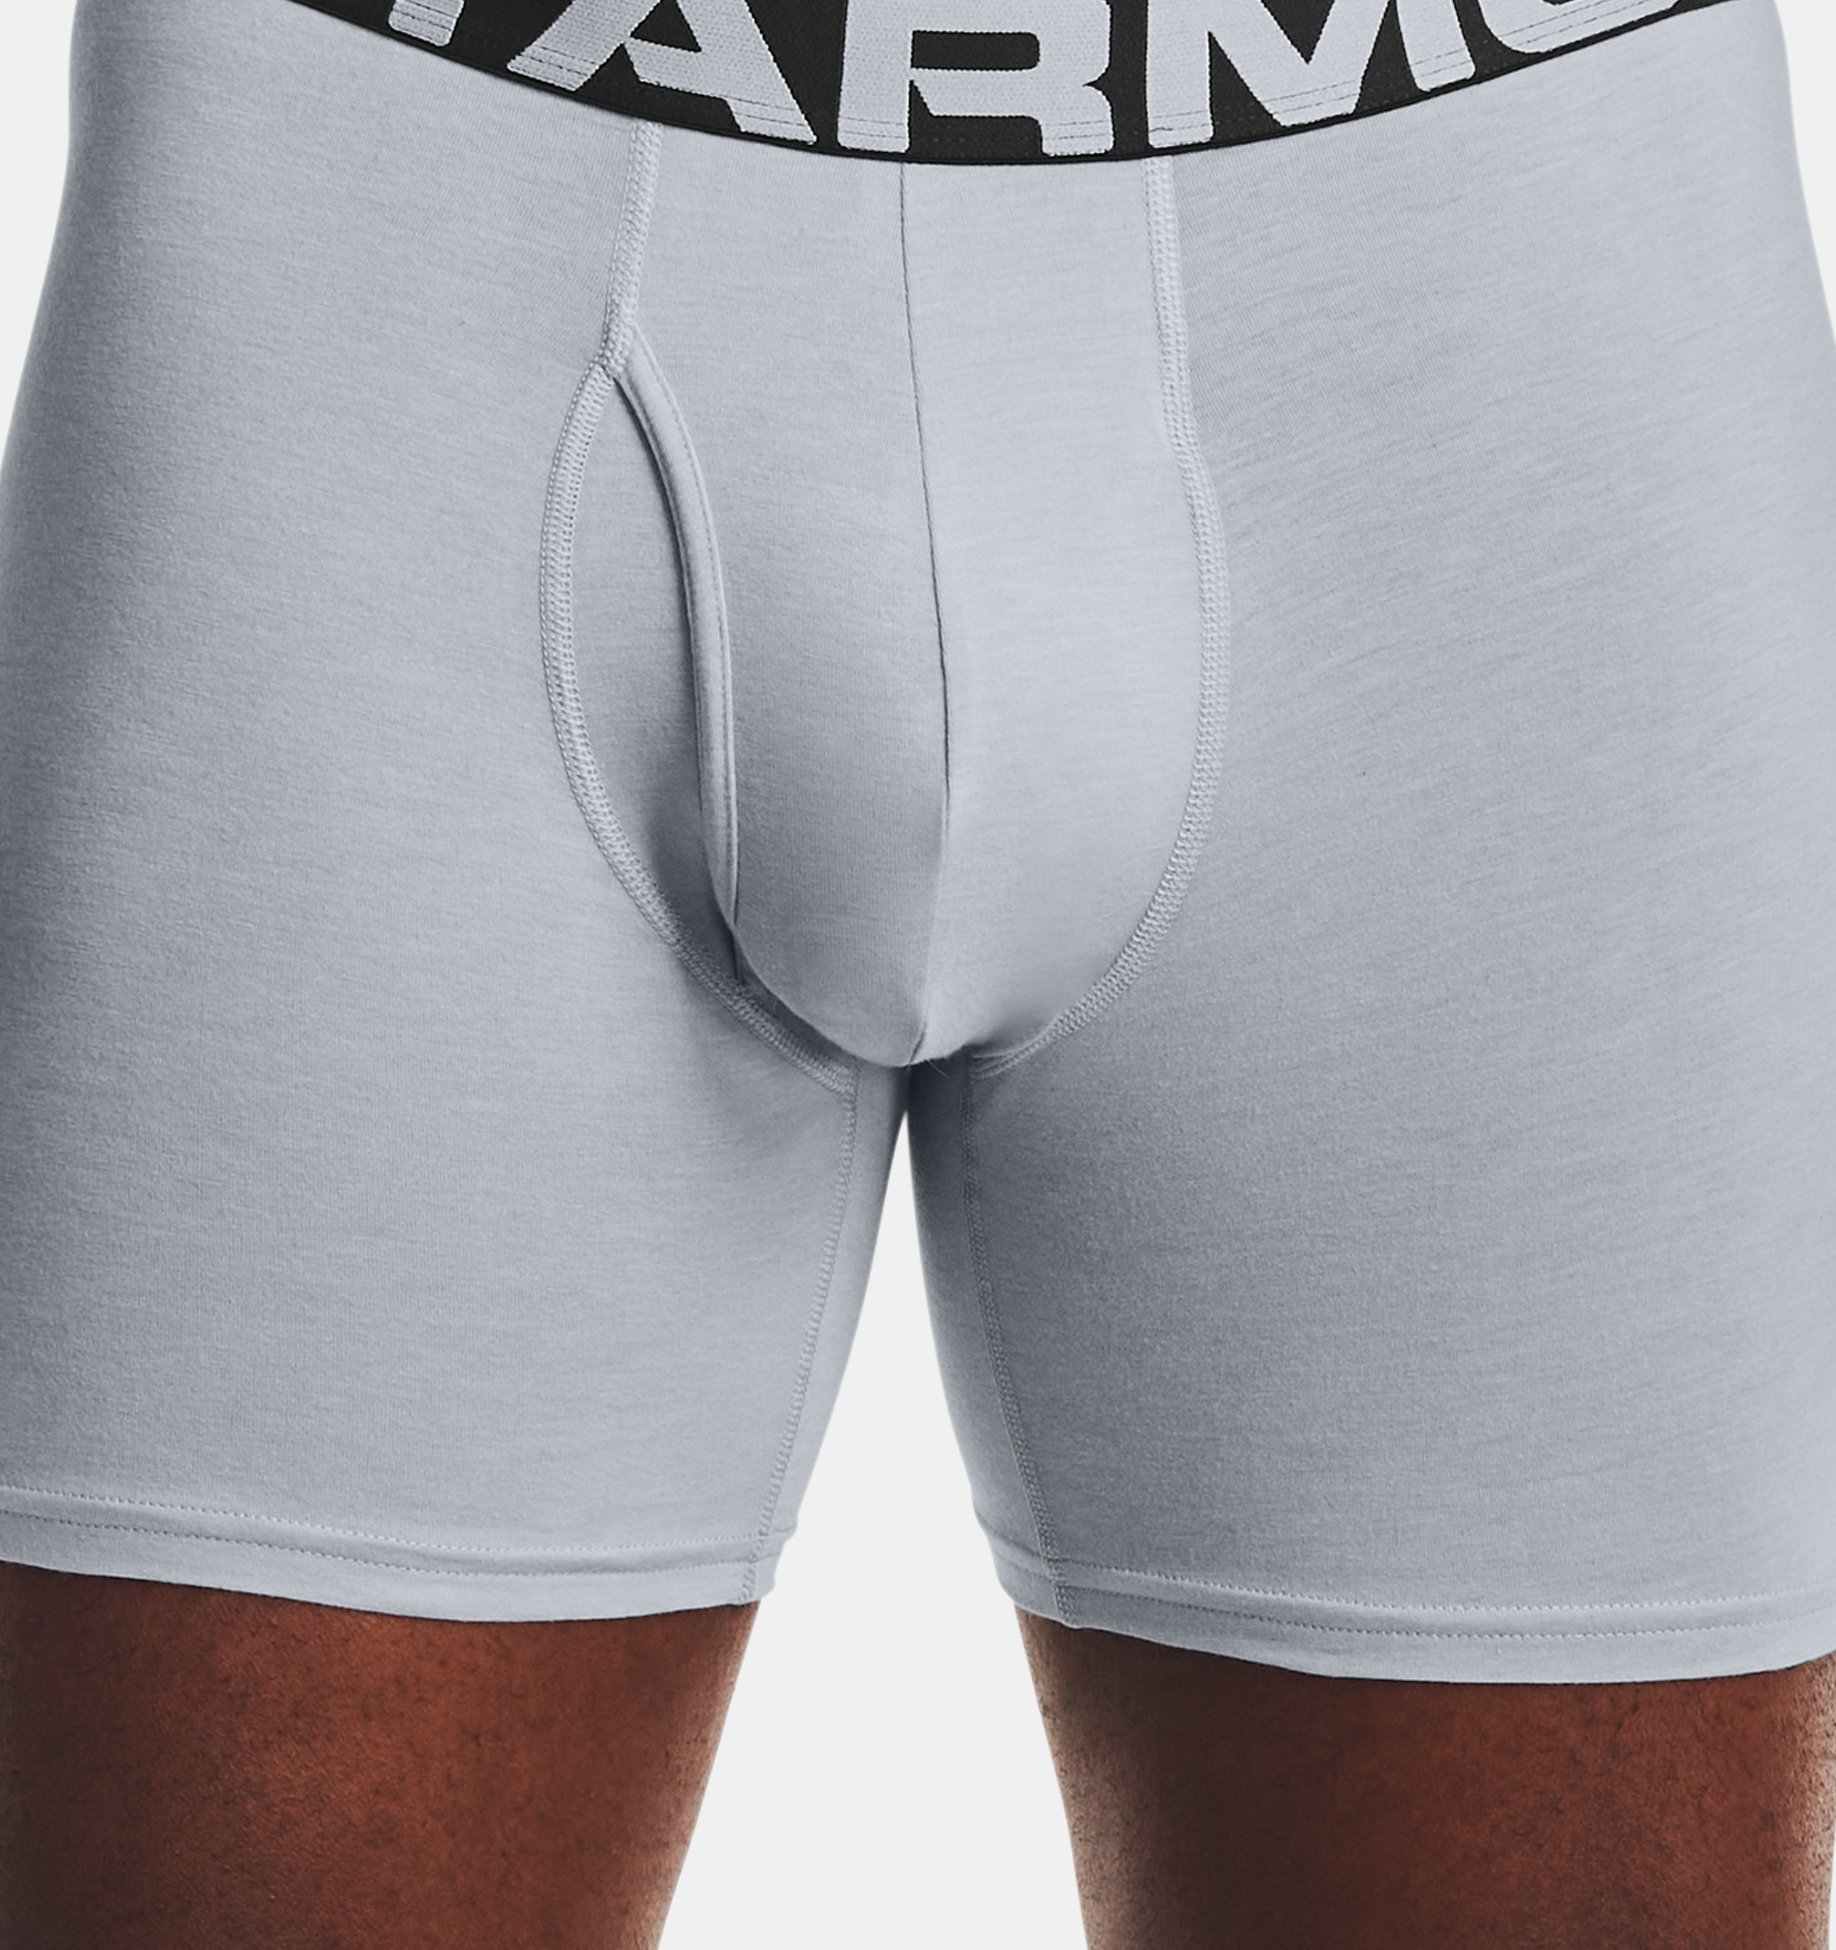 Buy Men's Boxers Under Armour Underwear Online